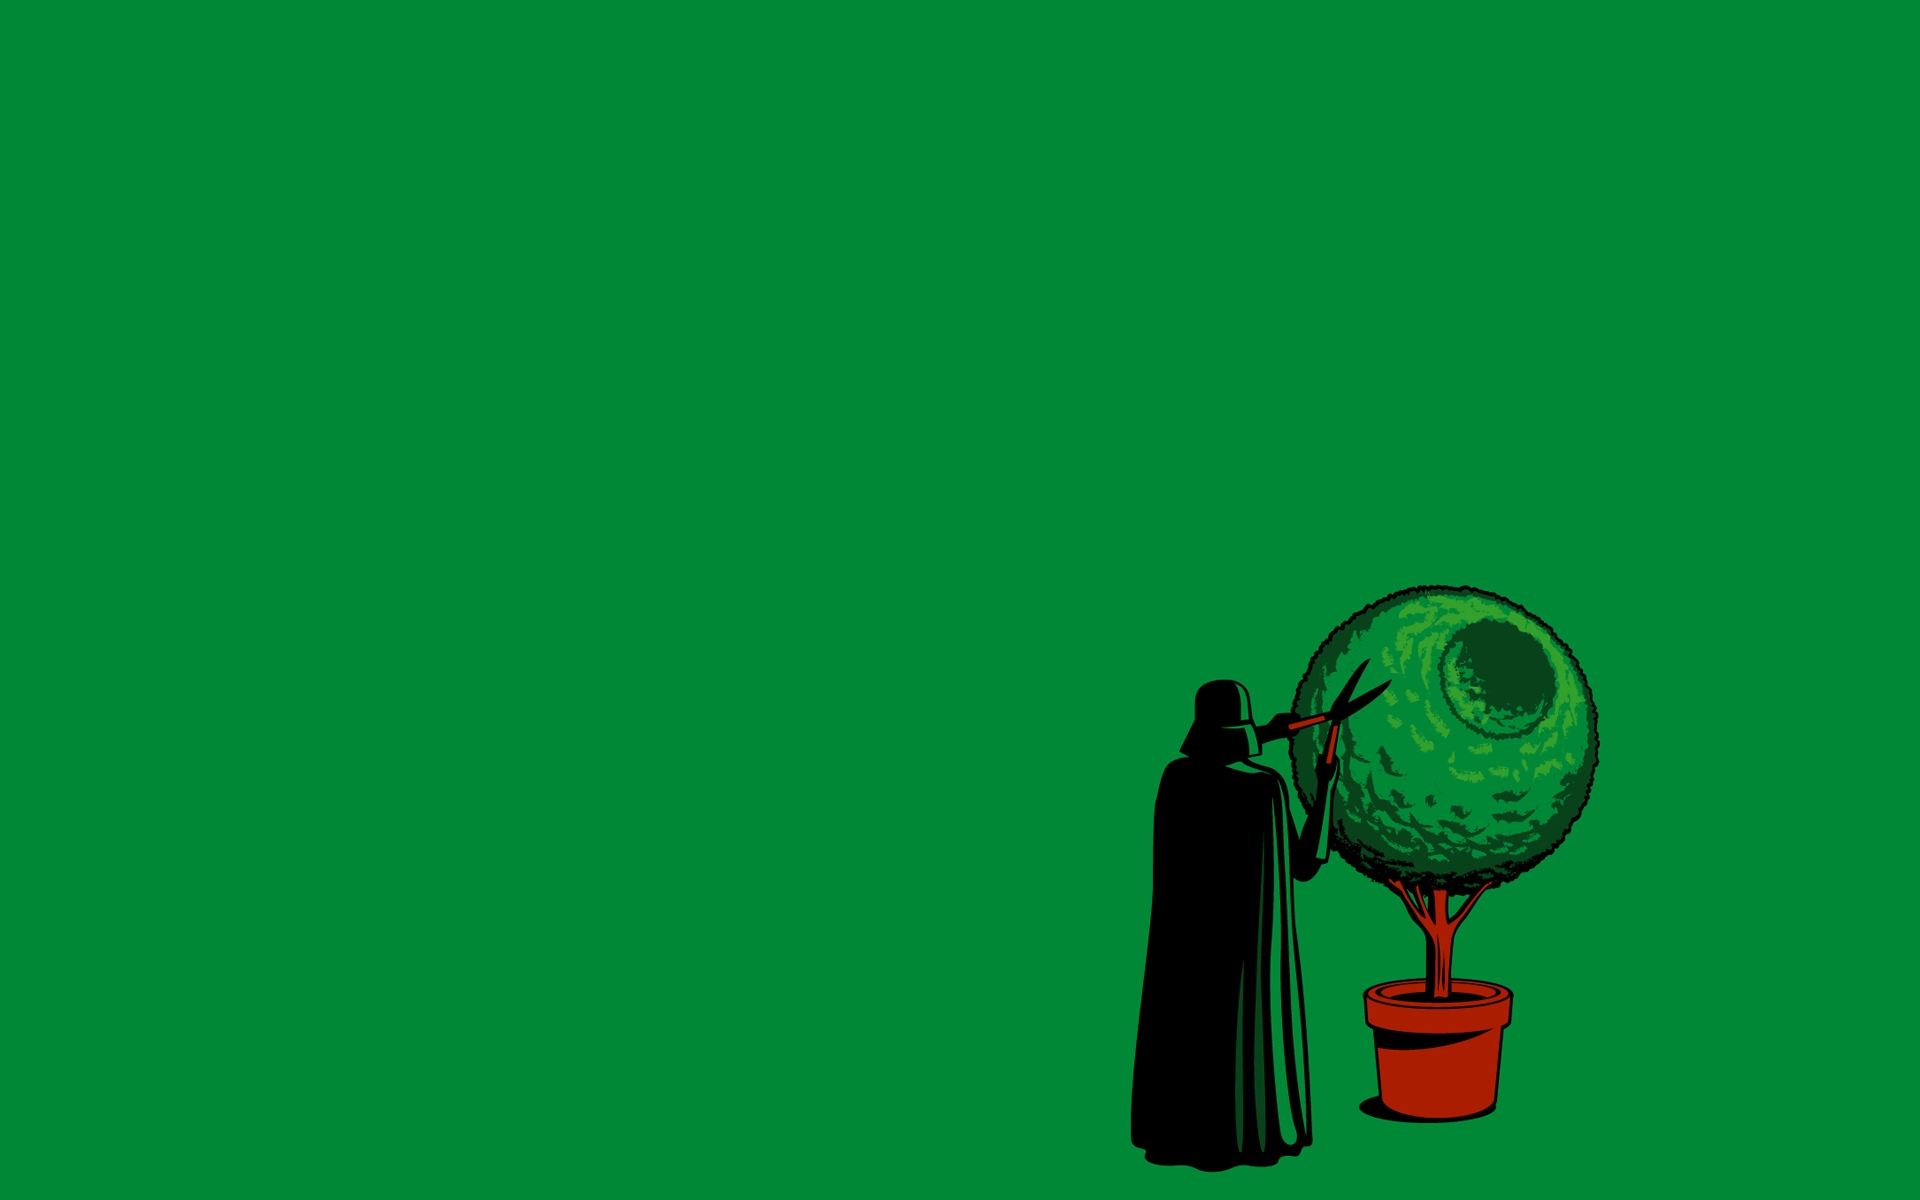 Darth Vader, funny, simple background, green background - desktop wallpaper